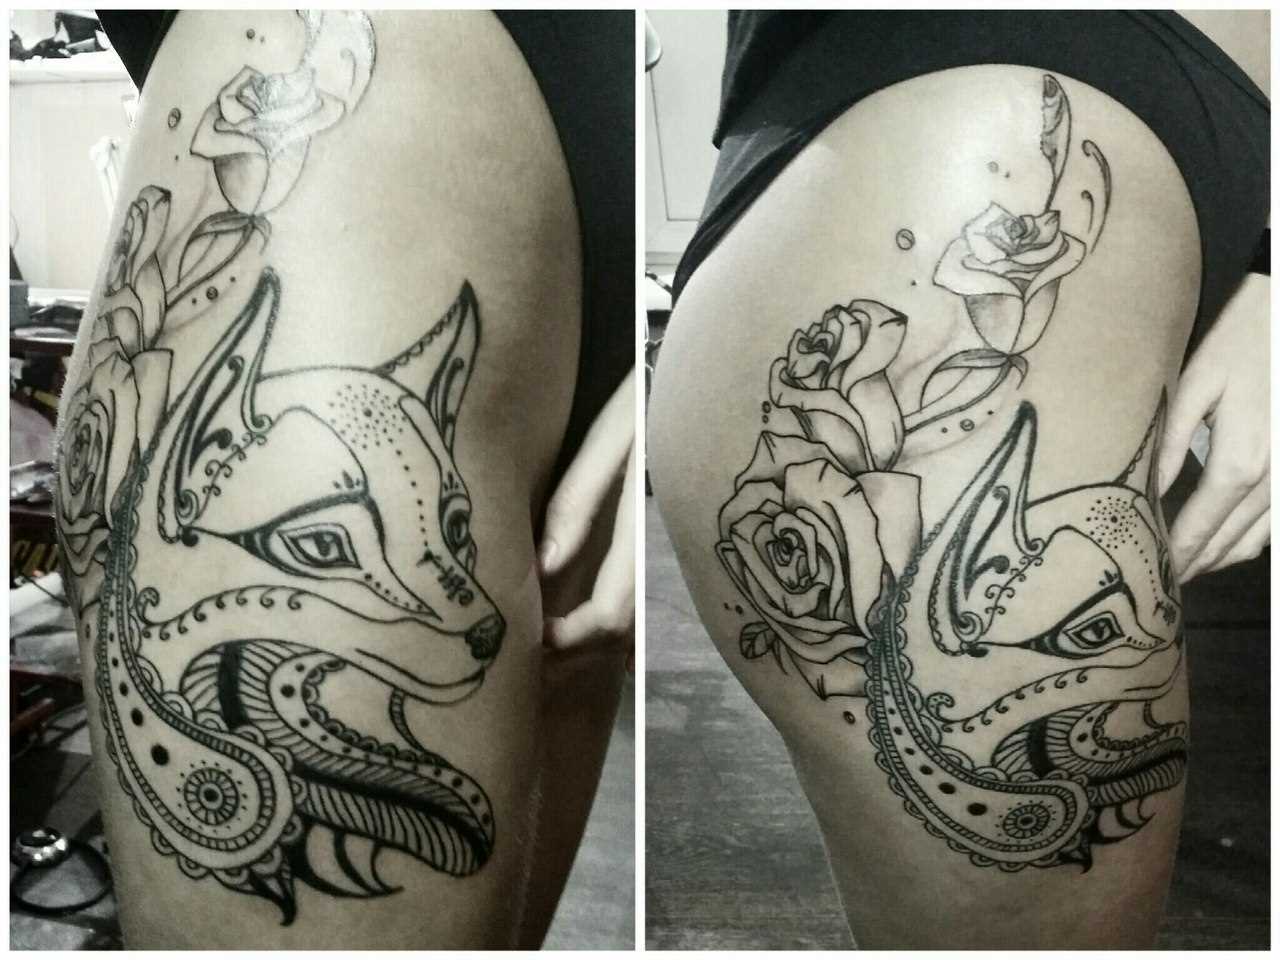 Tatuagem na coxa da menina - a raposa e as rosas